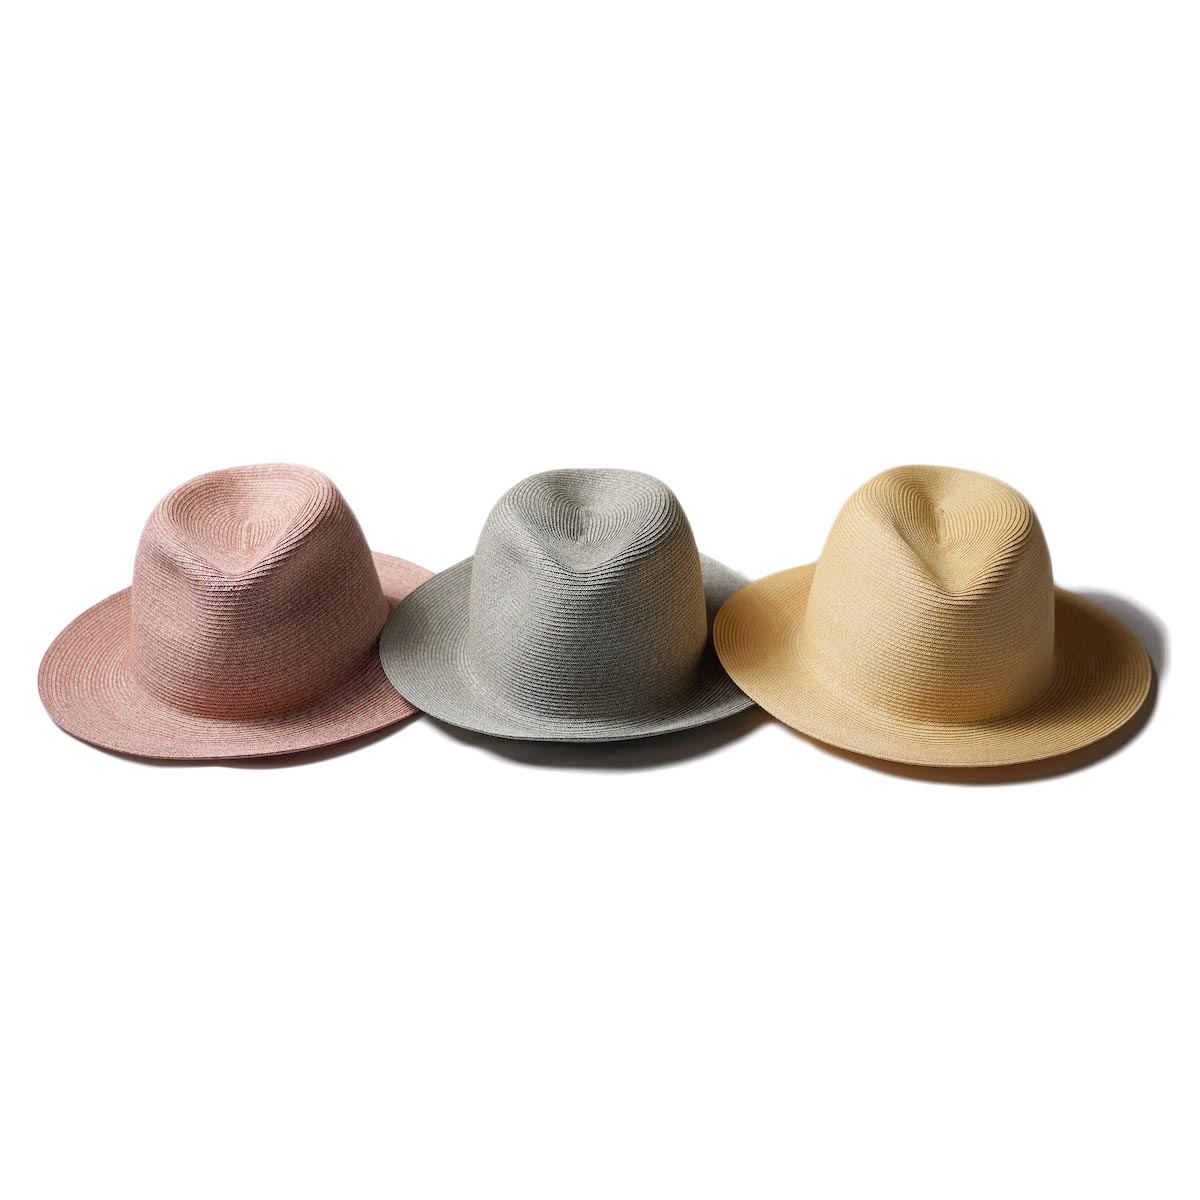 KIJIMA TAKAYUKI / Paper Braid Soft Hat